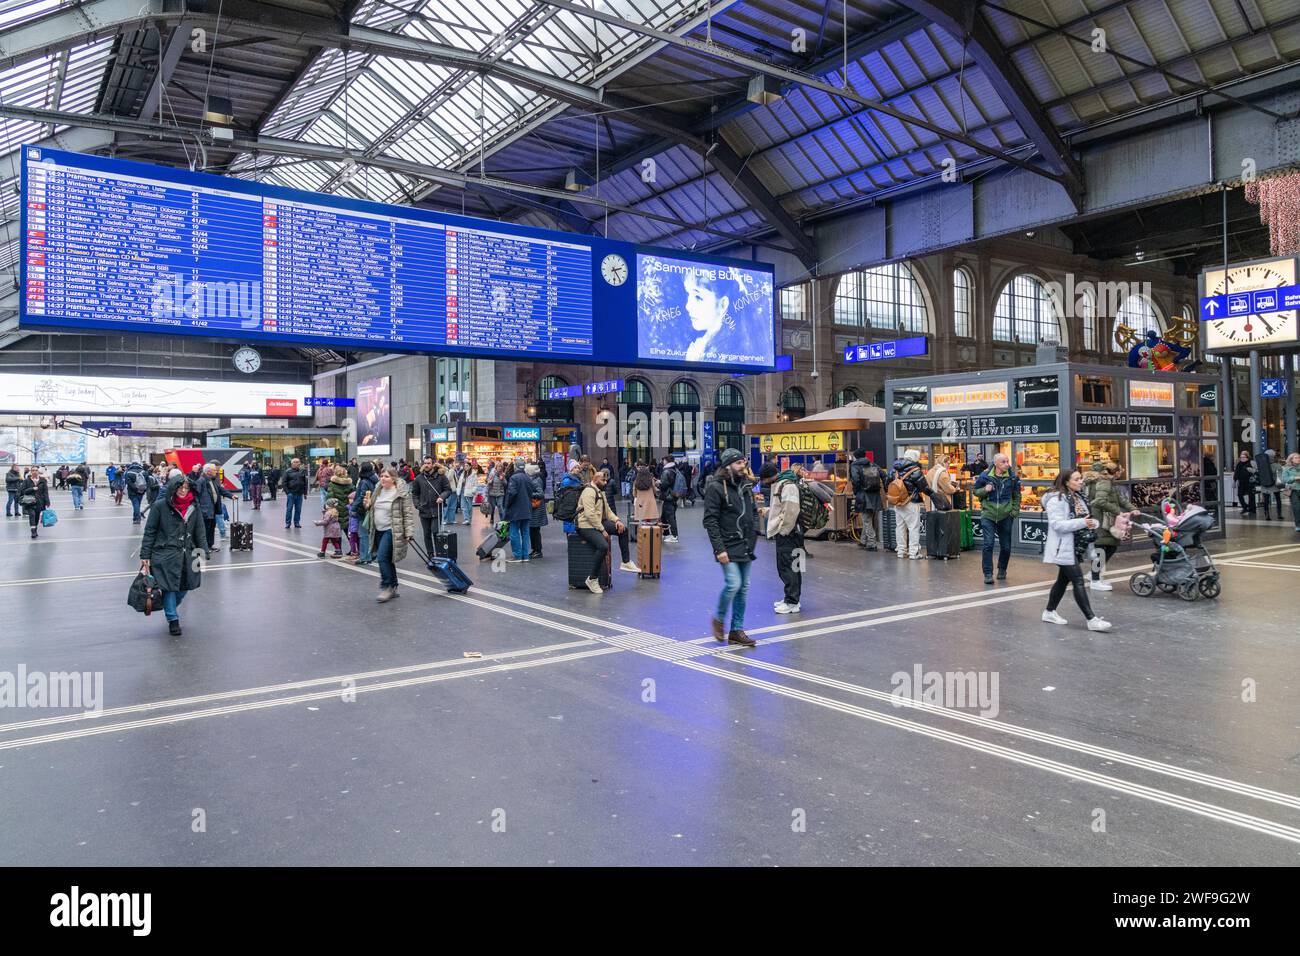 A busy concourse at Zurich Hauptbahnhof train station in Zurich, Switzerland Stock Photo